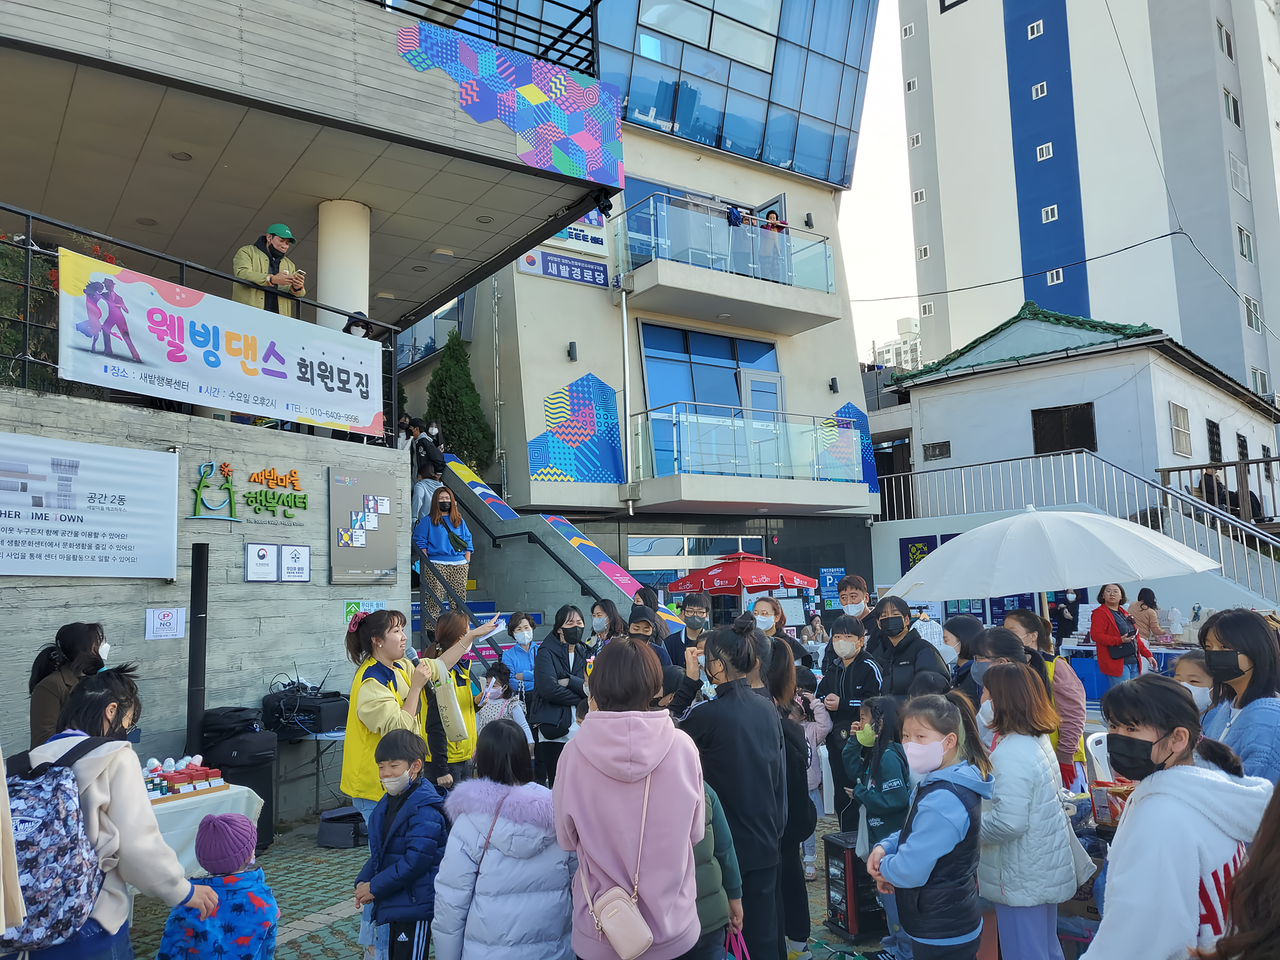 지난해 11월 8일, 팔방미인 협동조합이 운영하는 거점시설 행복센터와 에코센터 앞에서 벼룩시장이 열렸다. 트트트 센터 페이스북 갈무리